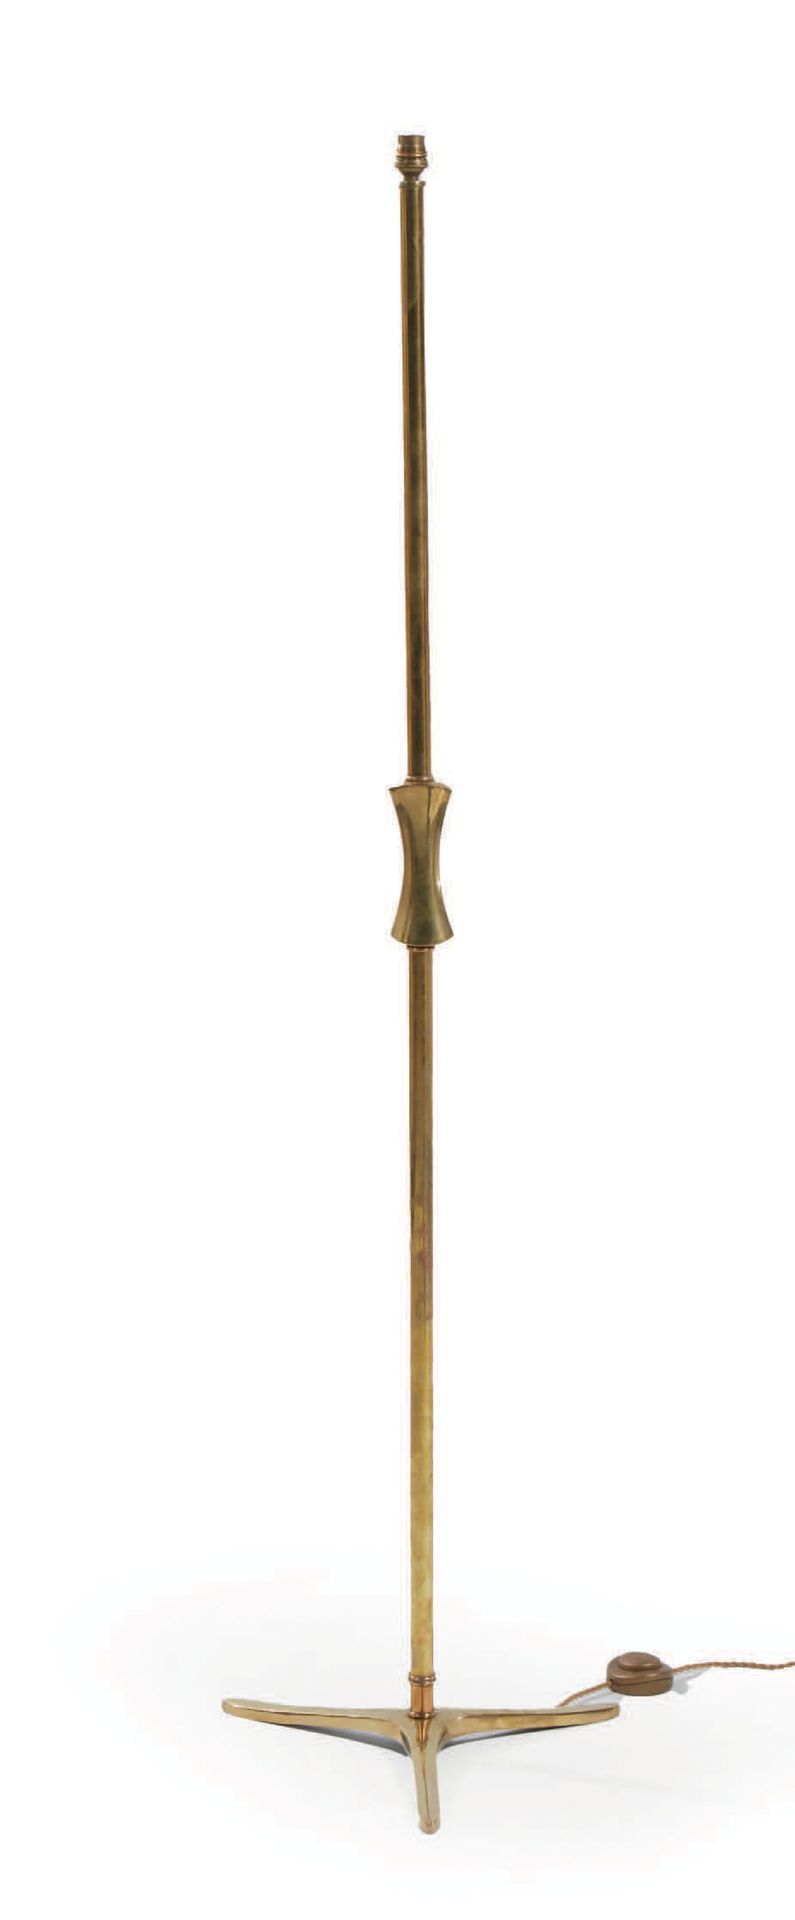 SCARPA, ATTRIBUÉ À Floor lamp in varnished gilt bronze
H : 149 cm